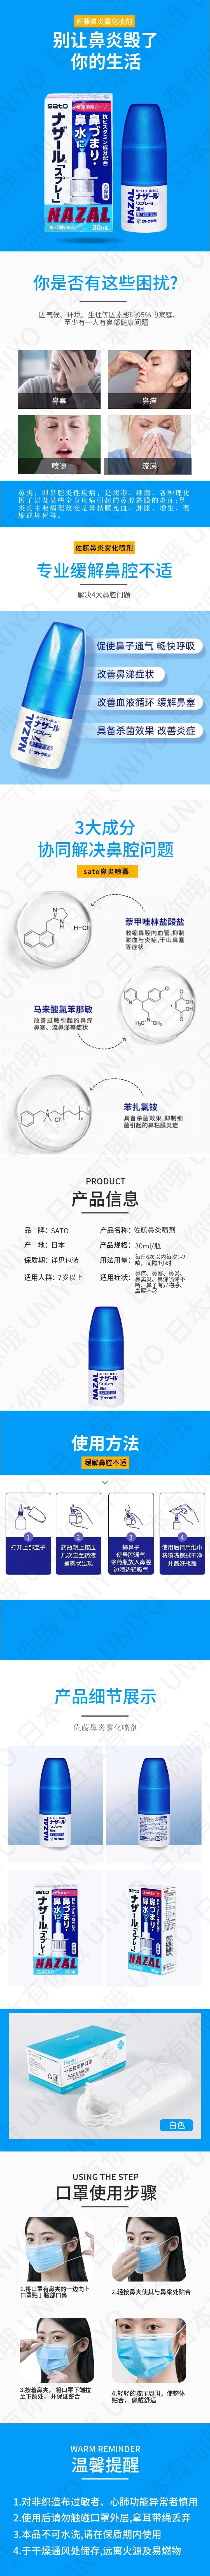 【日本直效郵件】SATO佐藤 藥劑 鼻炎噴劑 過敏性鼻炎 無味 30ml